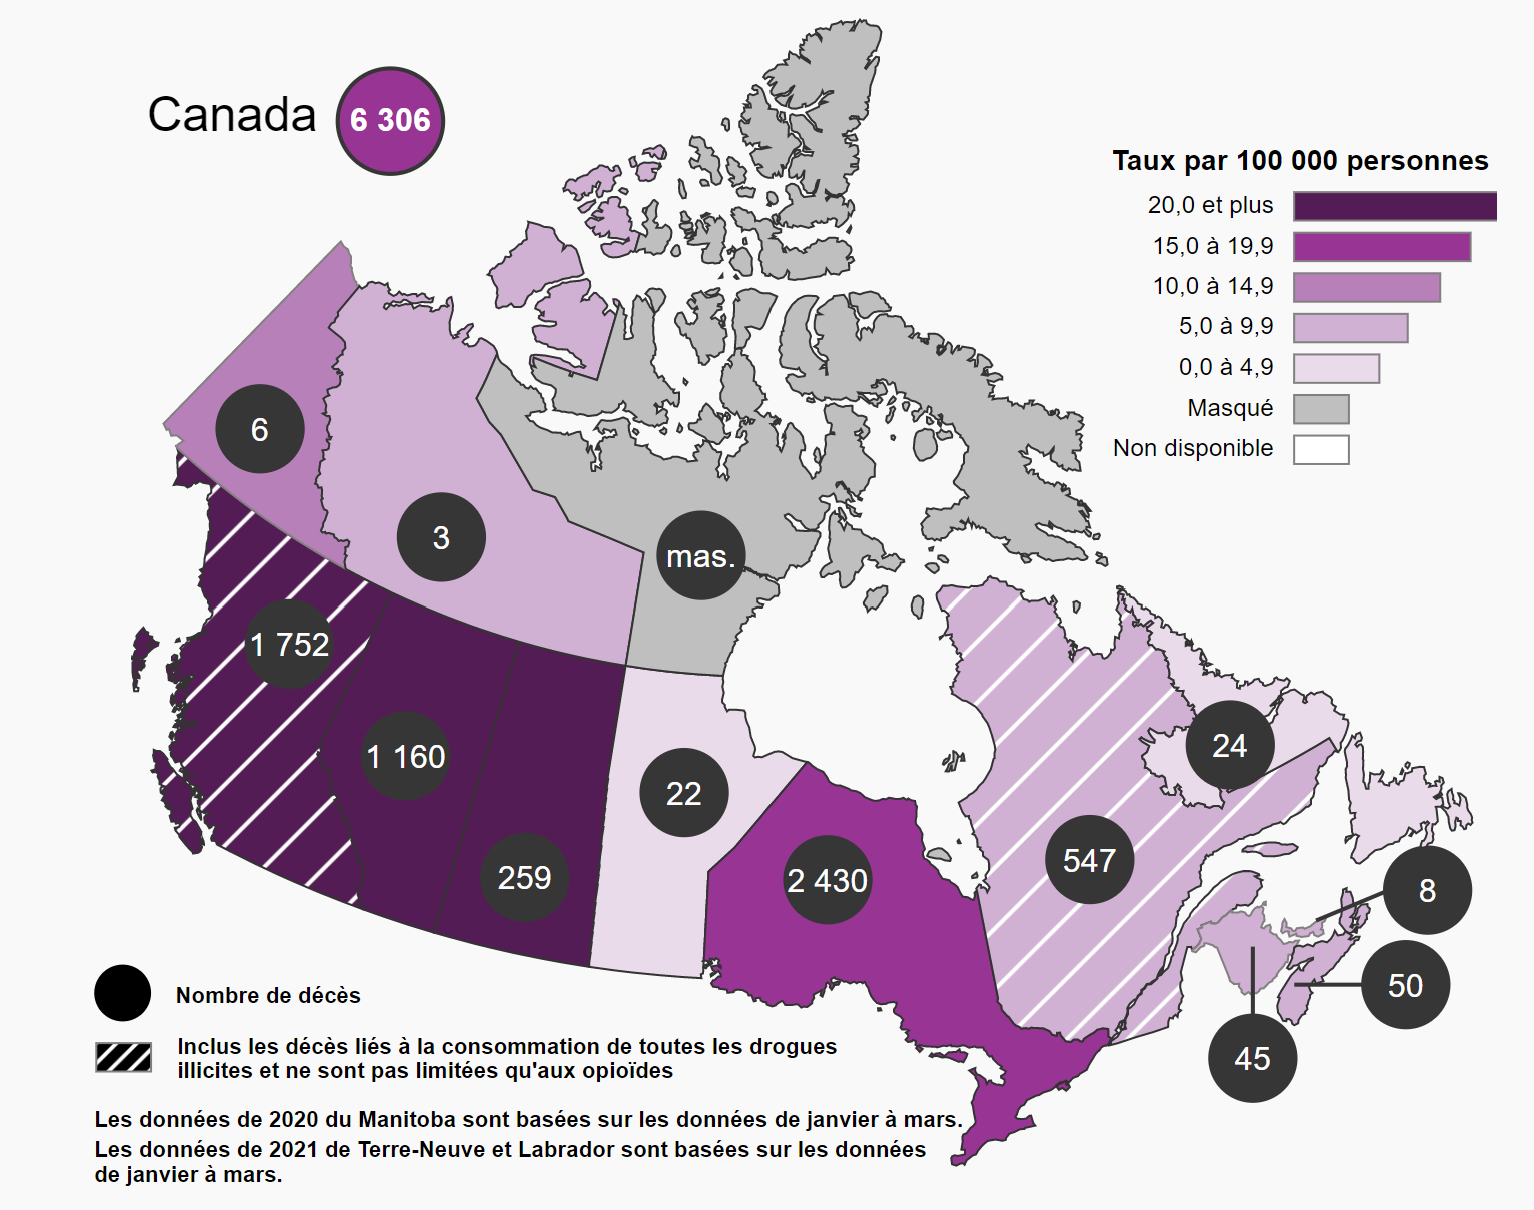 Cette figure indique que la Colombie-Britannique, l’Alberta, la Saskatchewan, l’Ontario et le Yukon ont enregistré les taux de décès apparemment liés à une intoxication aux opioïdes par 100 000 personnes les plus élevés en 2020 (15 ou plus par 100 000 personnes). Le Manitoba, les provinces de l’Atlantique, le Québec et les Territoires du Nord-Ouest ont enregistré des taux inférieurs (entre 2 et 7 par 100 000 personnes).